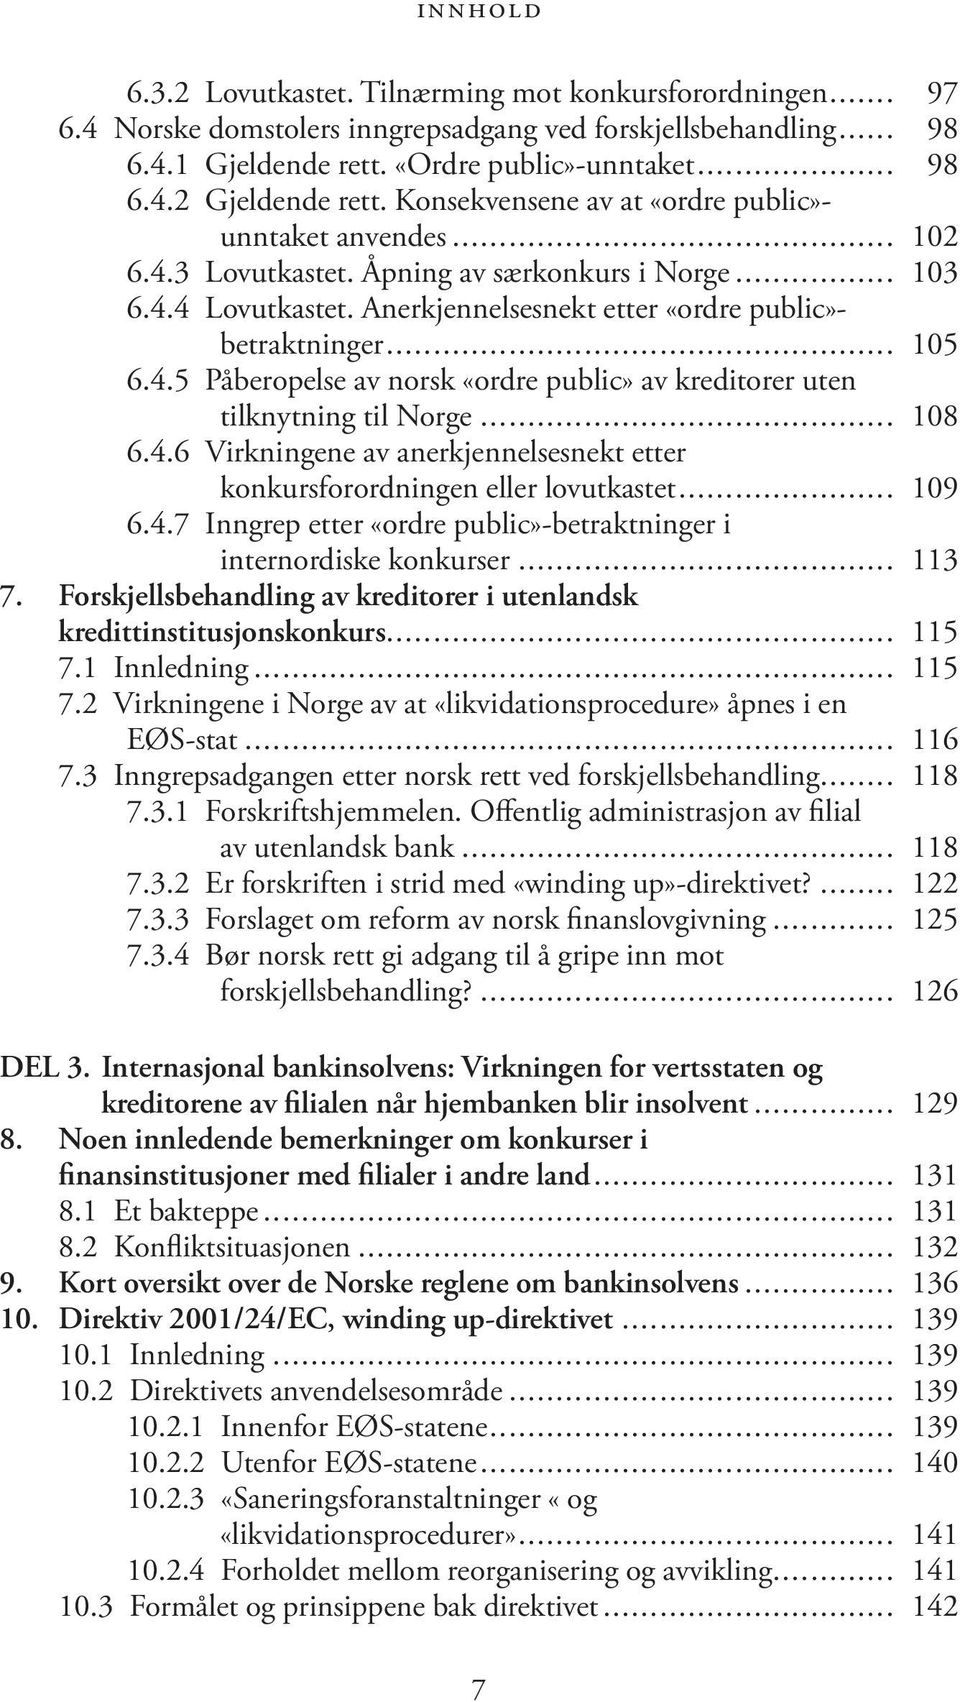 4.5 Påberopelse av norsk «ordre public» av kreditorer uten tilknytning til Norge... 108 6.4.6 Virkningene av anerkjennelsesnekt etter konkursforordningen eller lovutkastet... 109 6.4.7 Inngrep etter «ordre public»-betraktninger i internordiske konkurser.